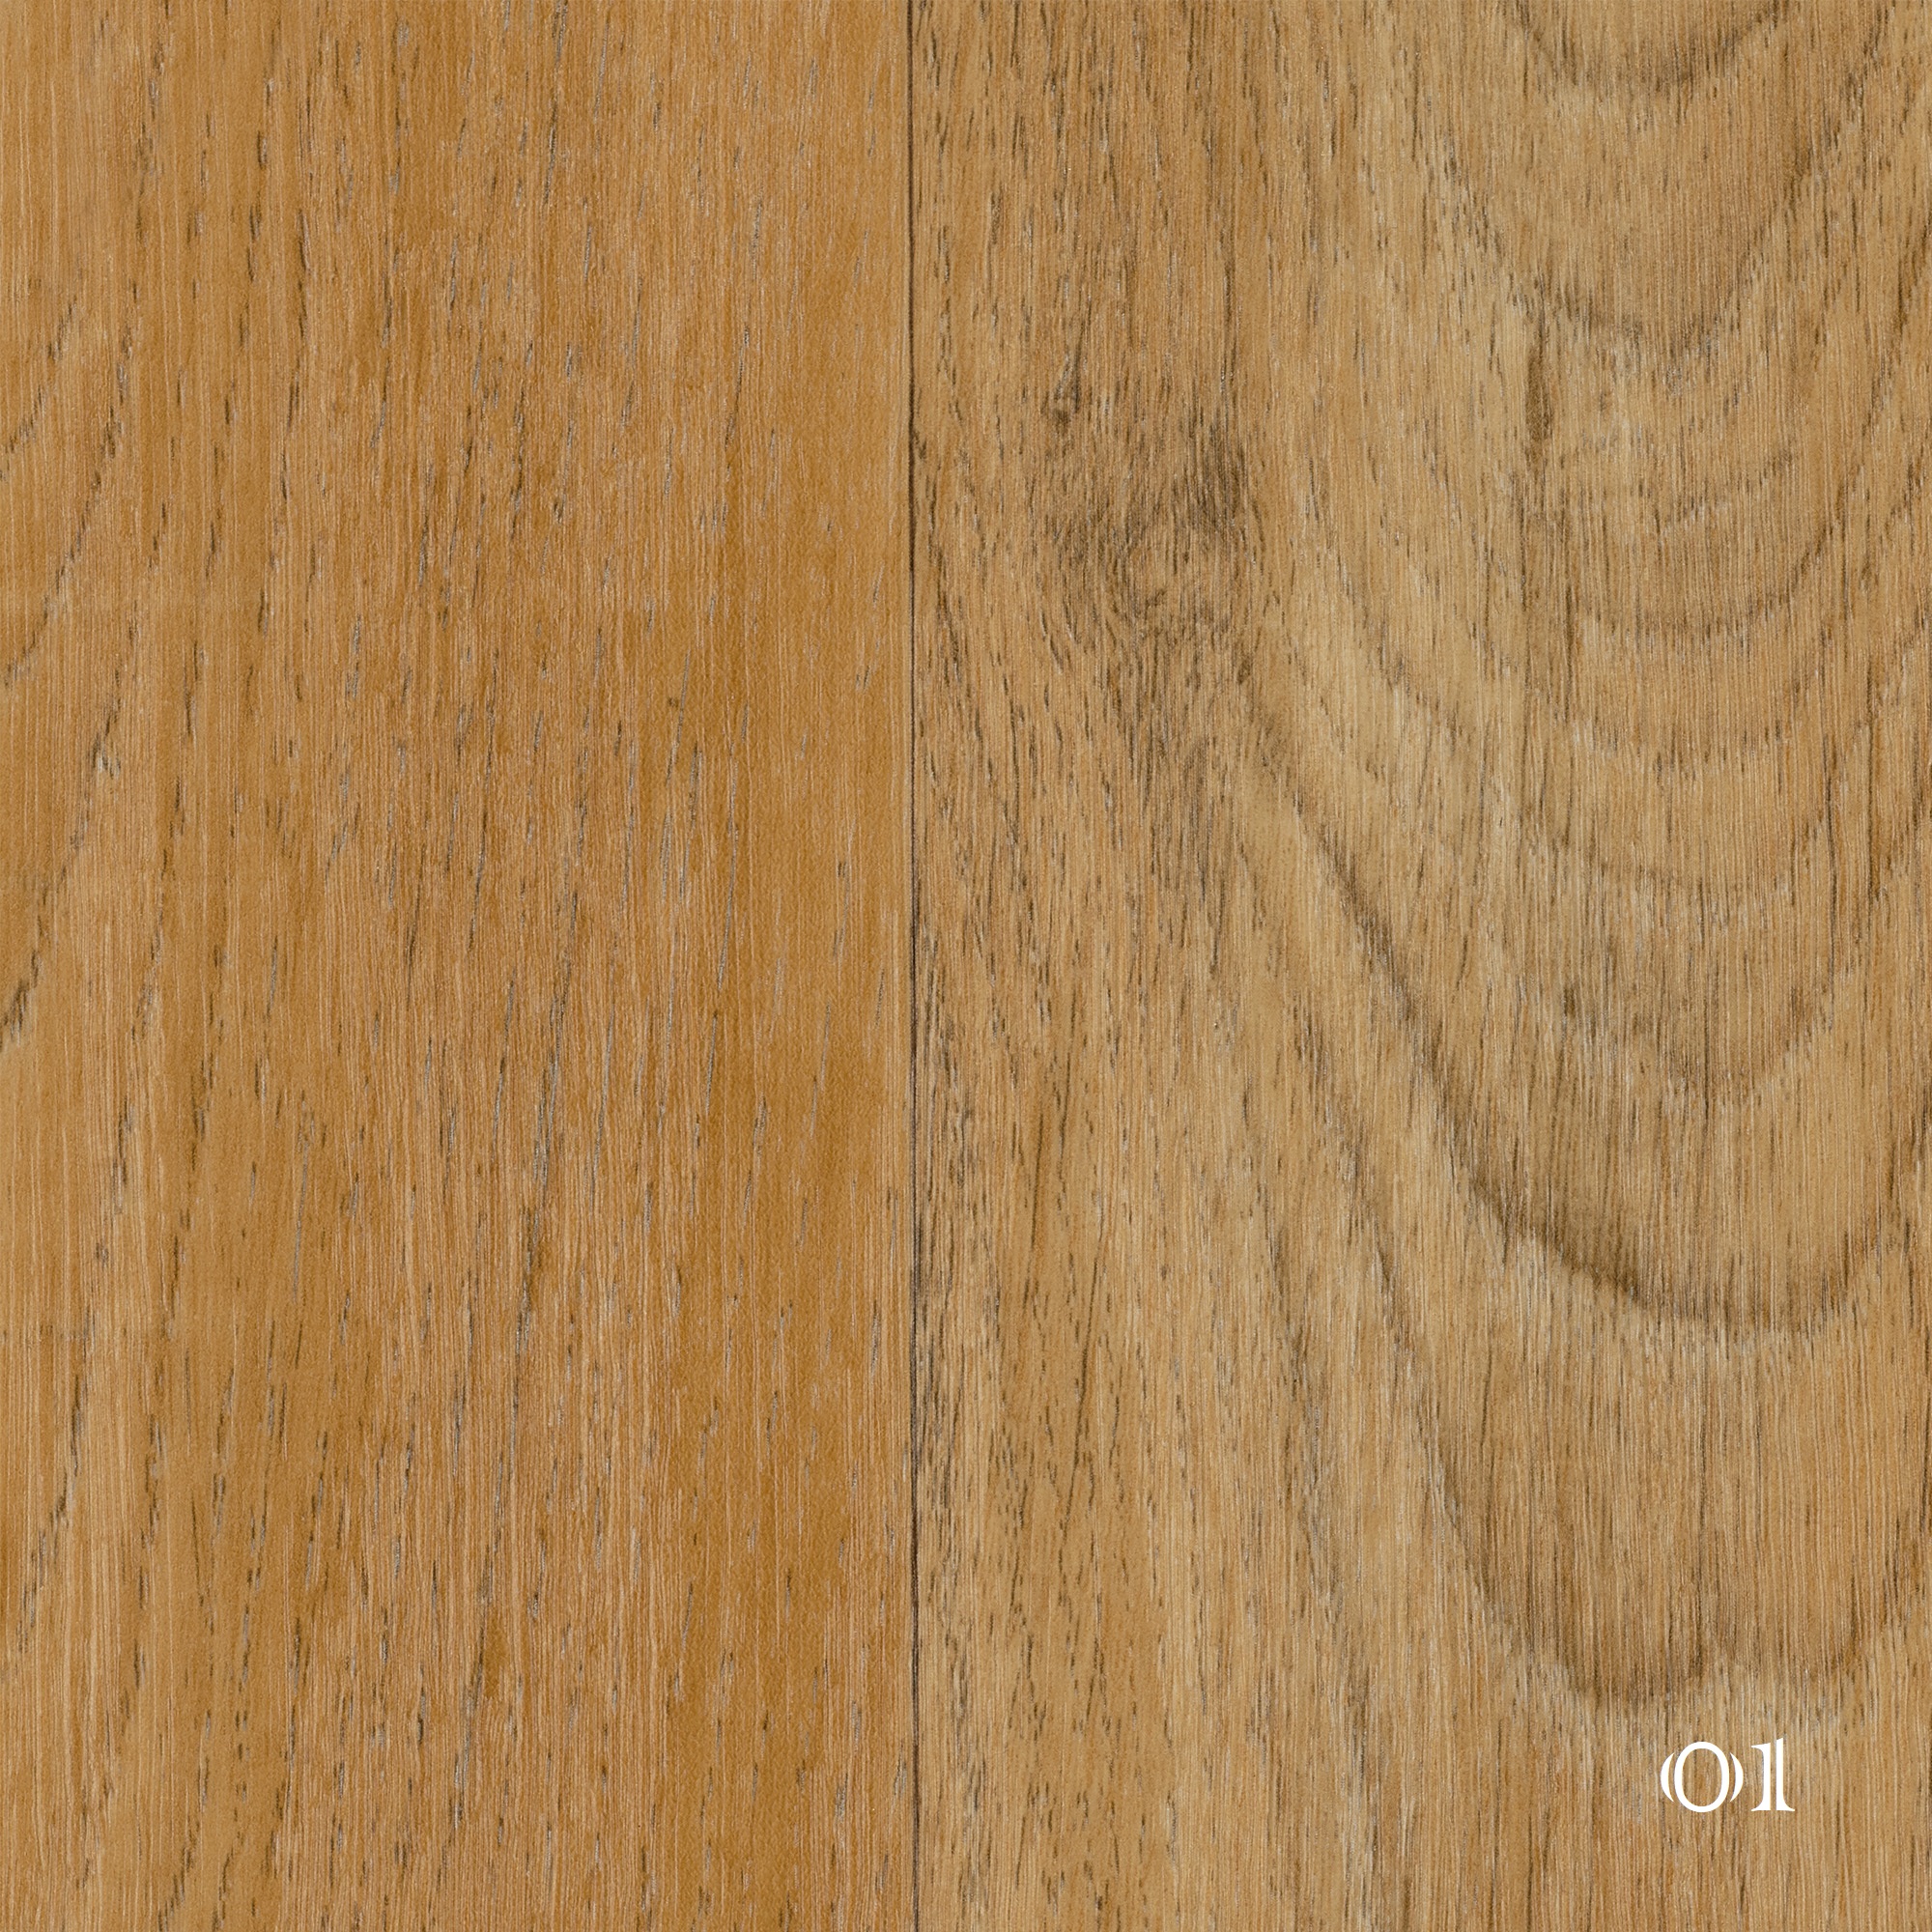 PVC Bodenbelag in beschriebenen bunten Holz 5,95€/m² 1/2 - 2m Breite 